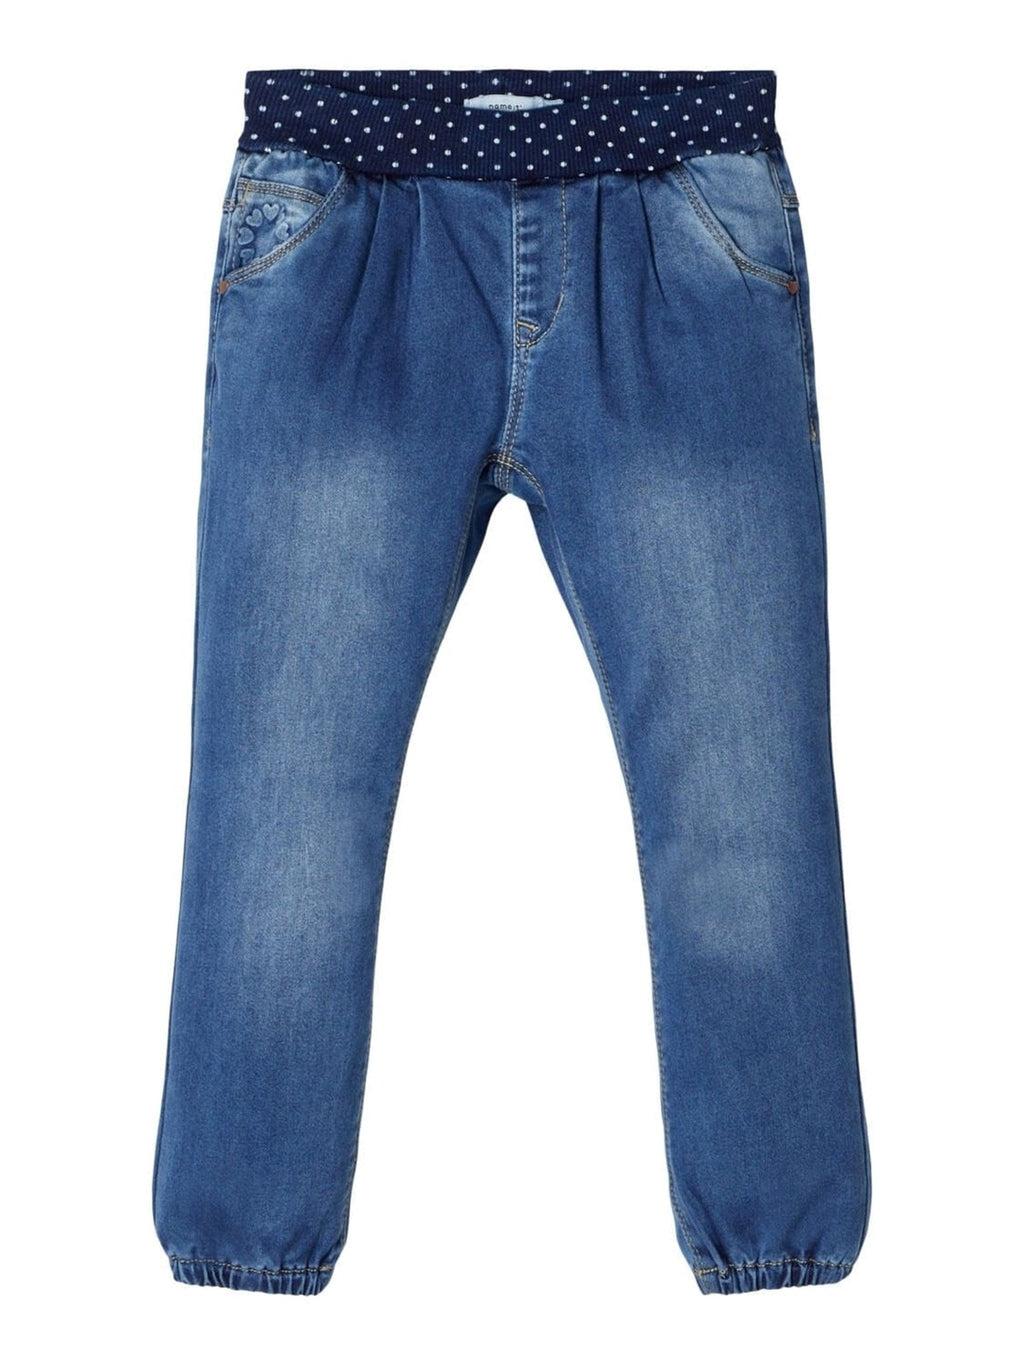 Bibi jeans - Blue denim